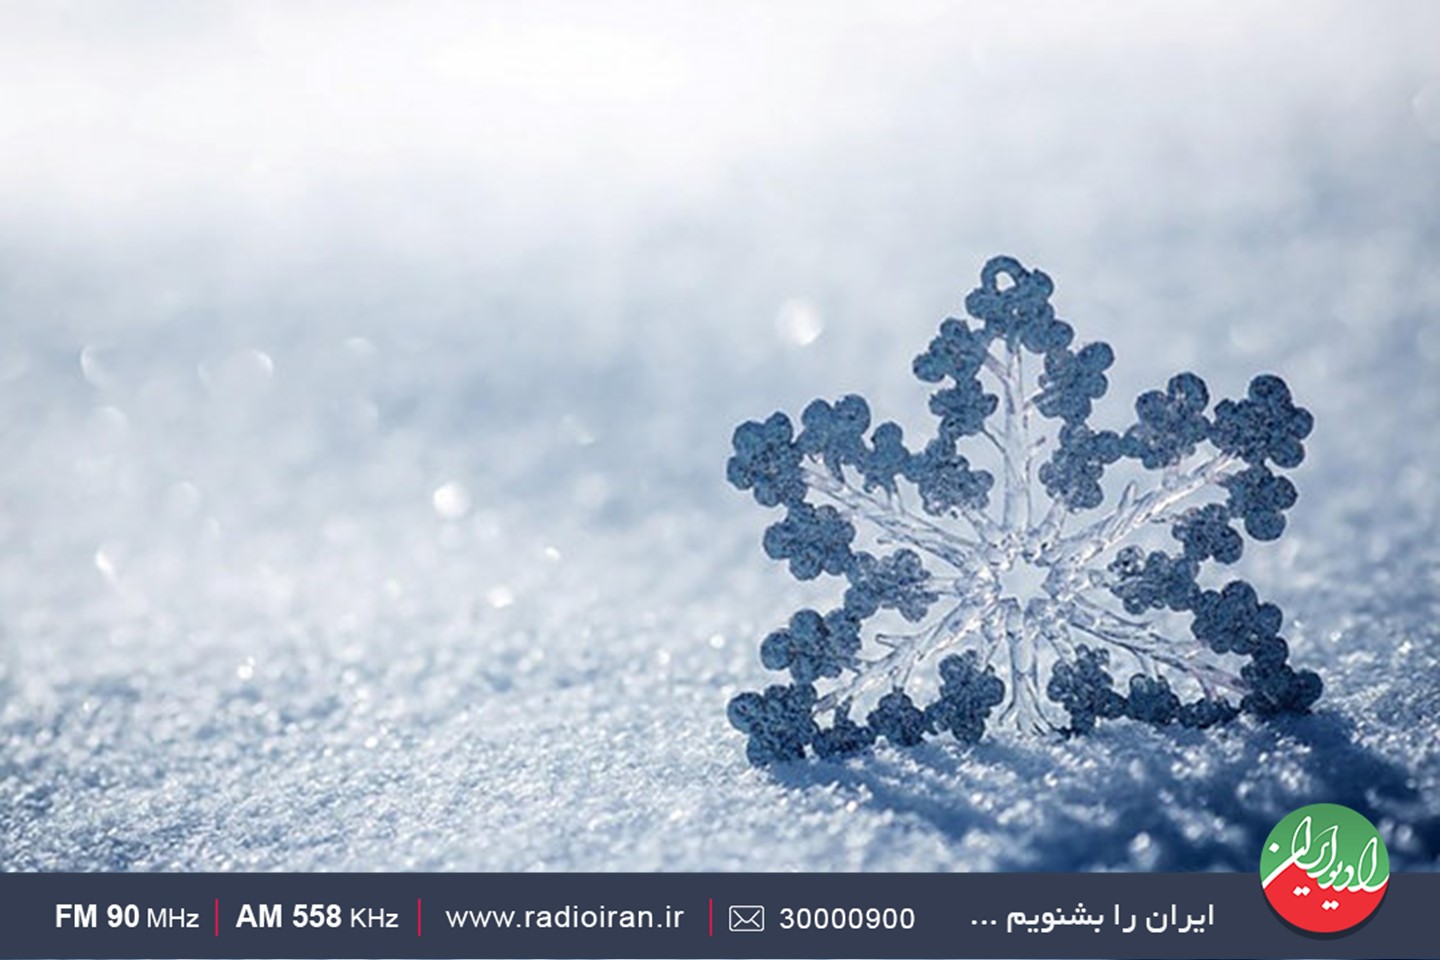 قصه «اولین برف زمستانی» در رادیو ایران